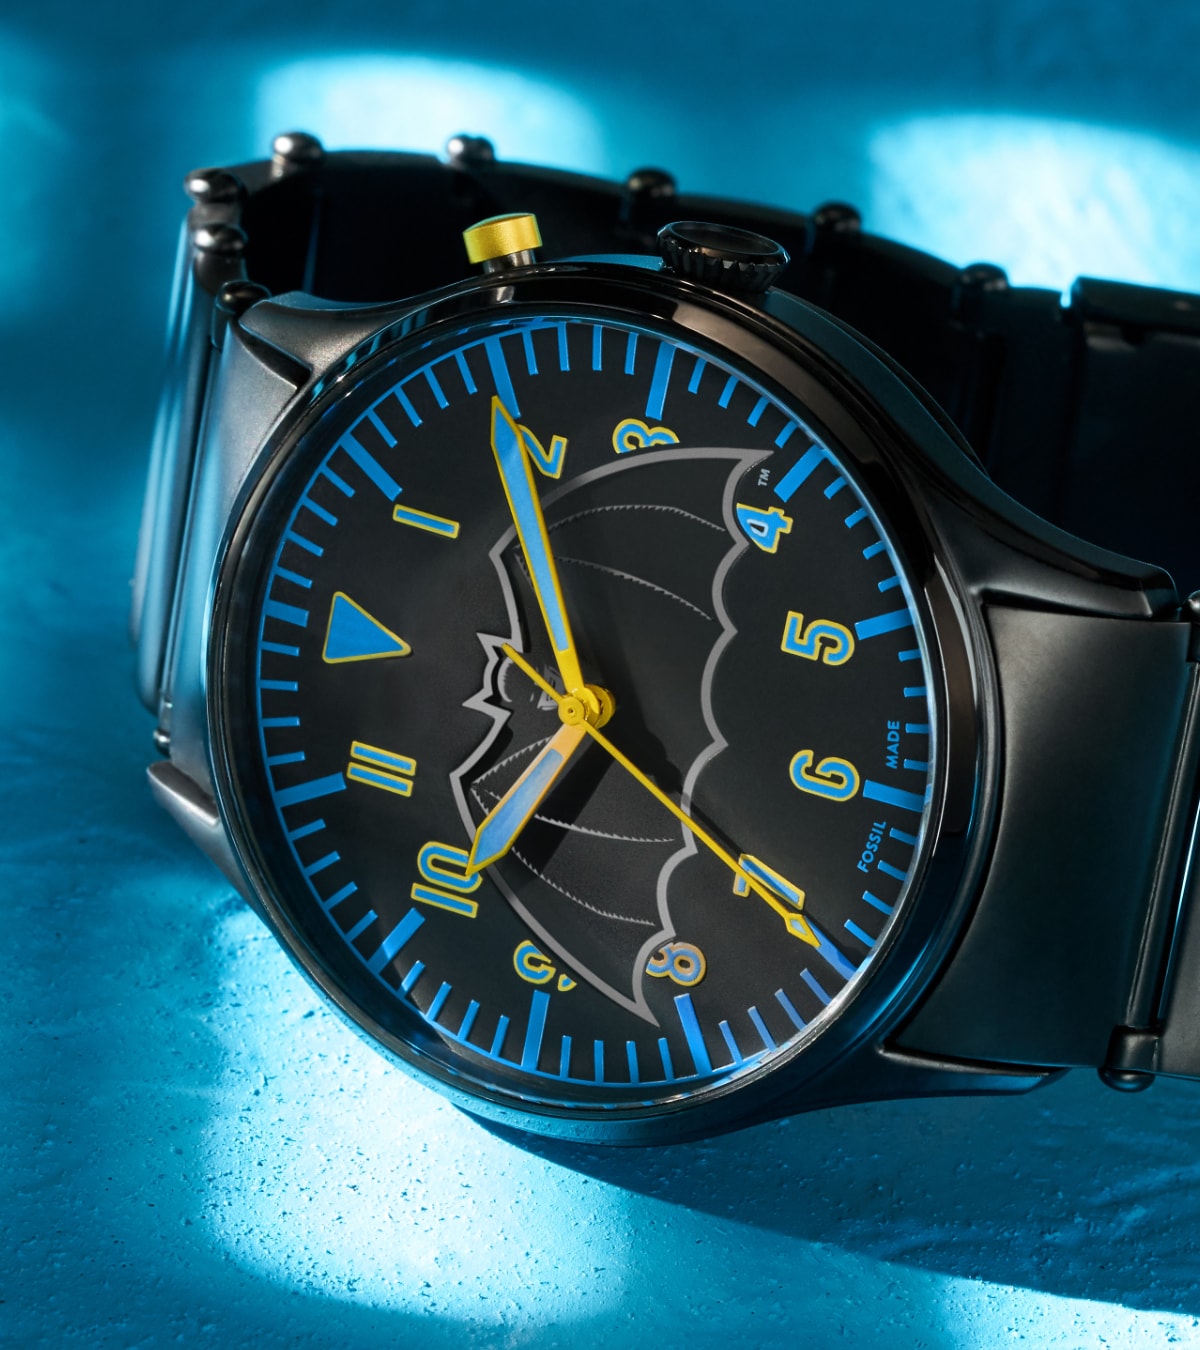 Eine Limited Edition Uhr Batman mit schwarzem Lederband.